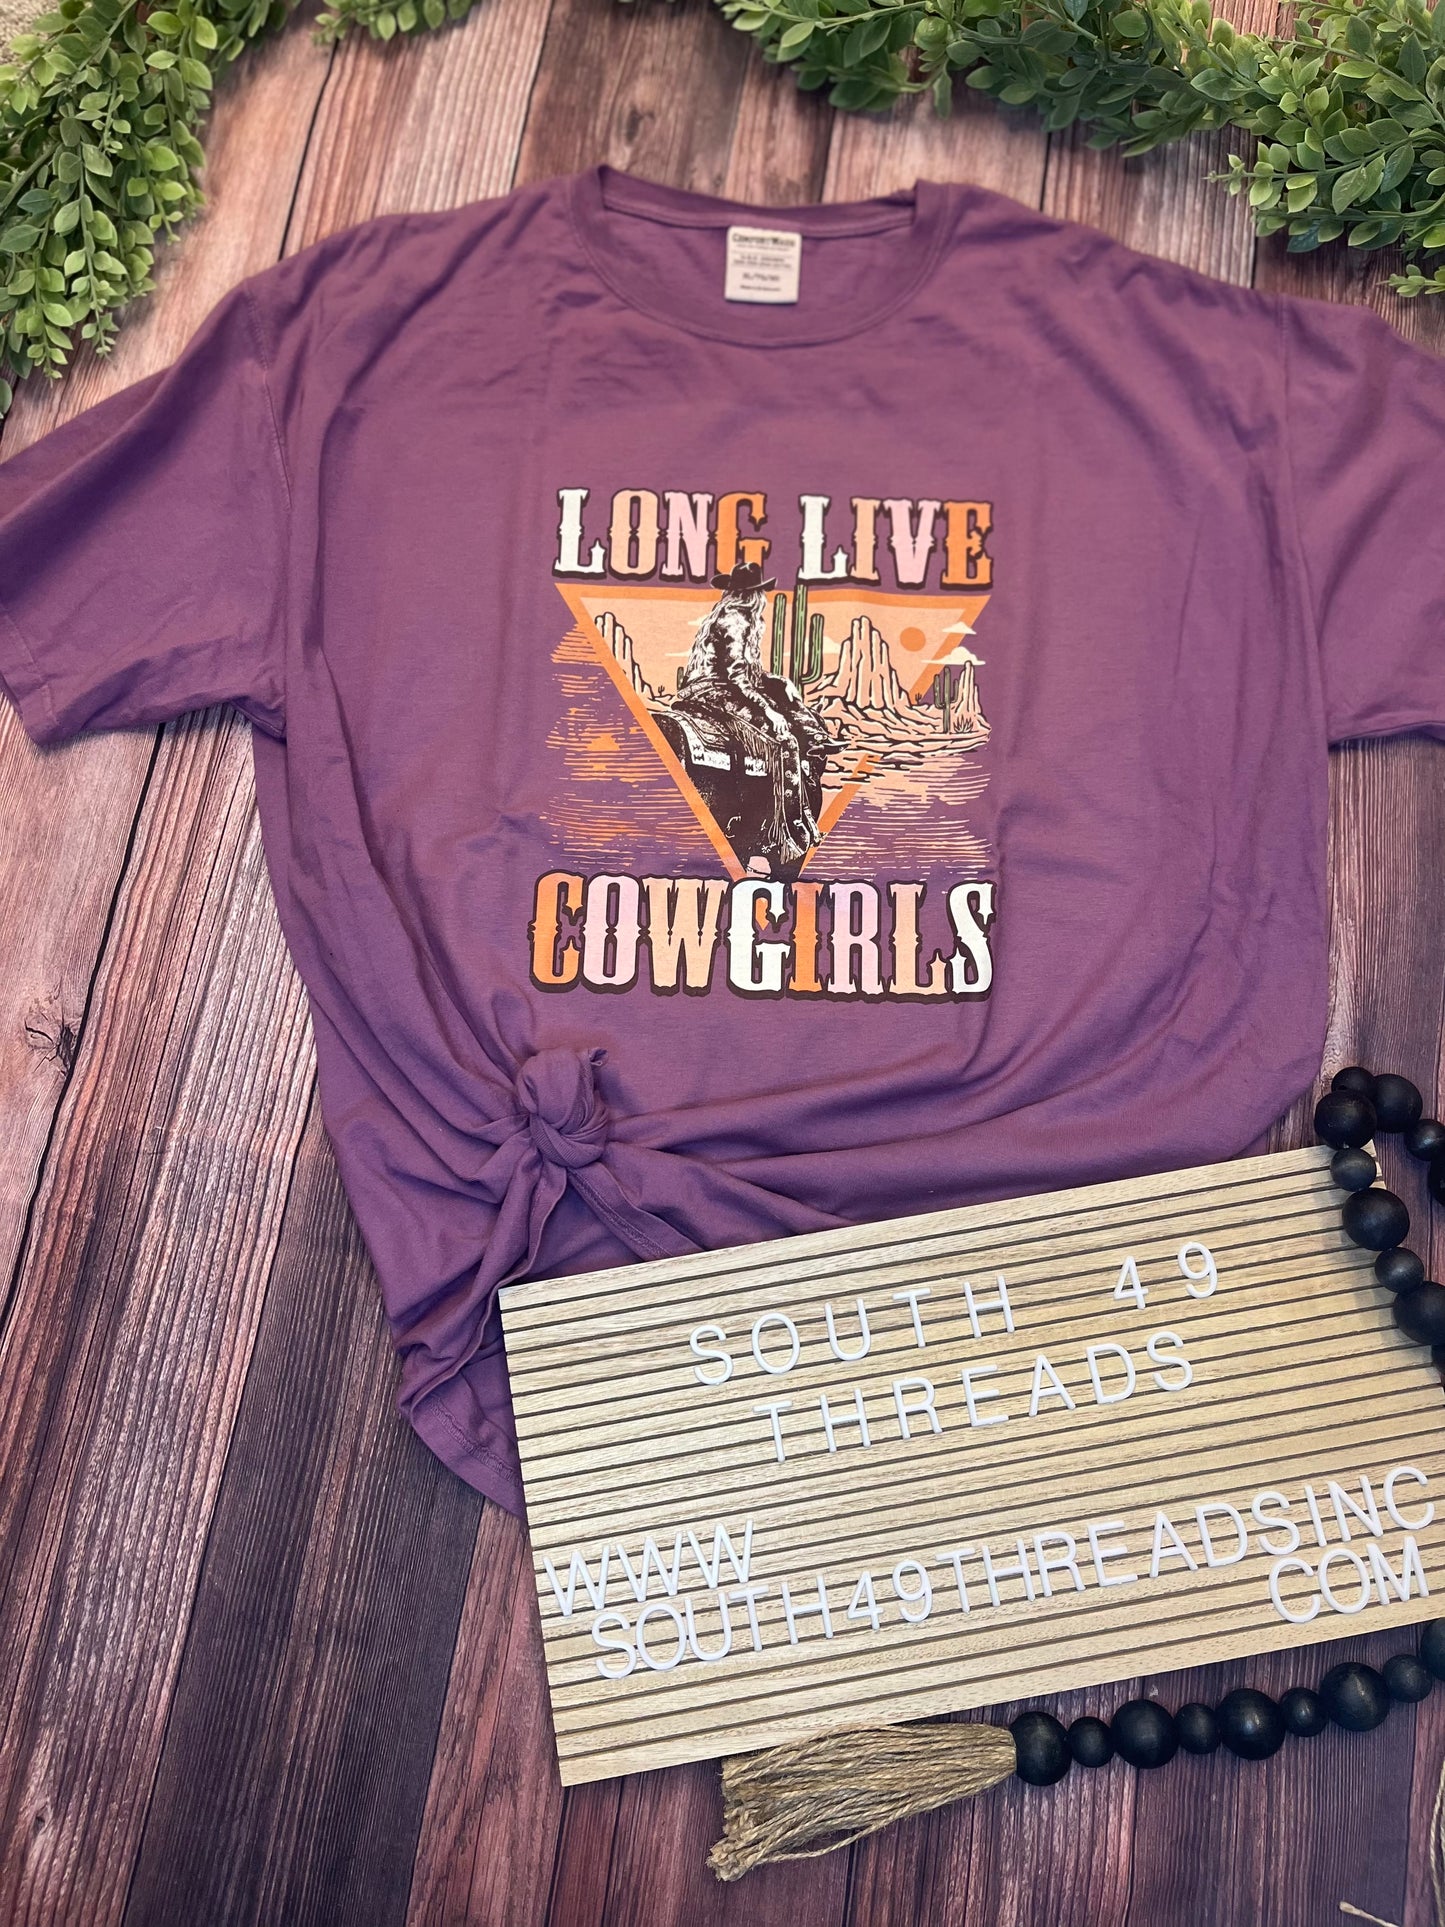 Long love cowgirls tee